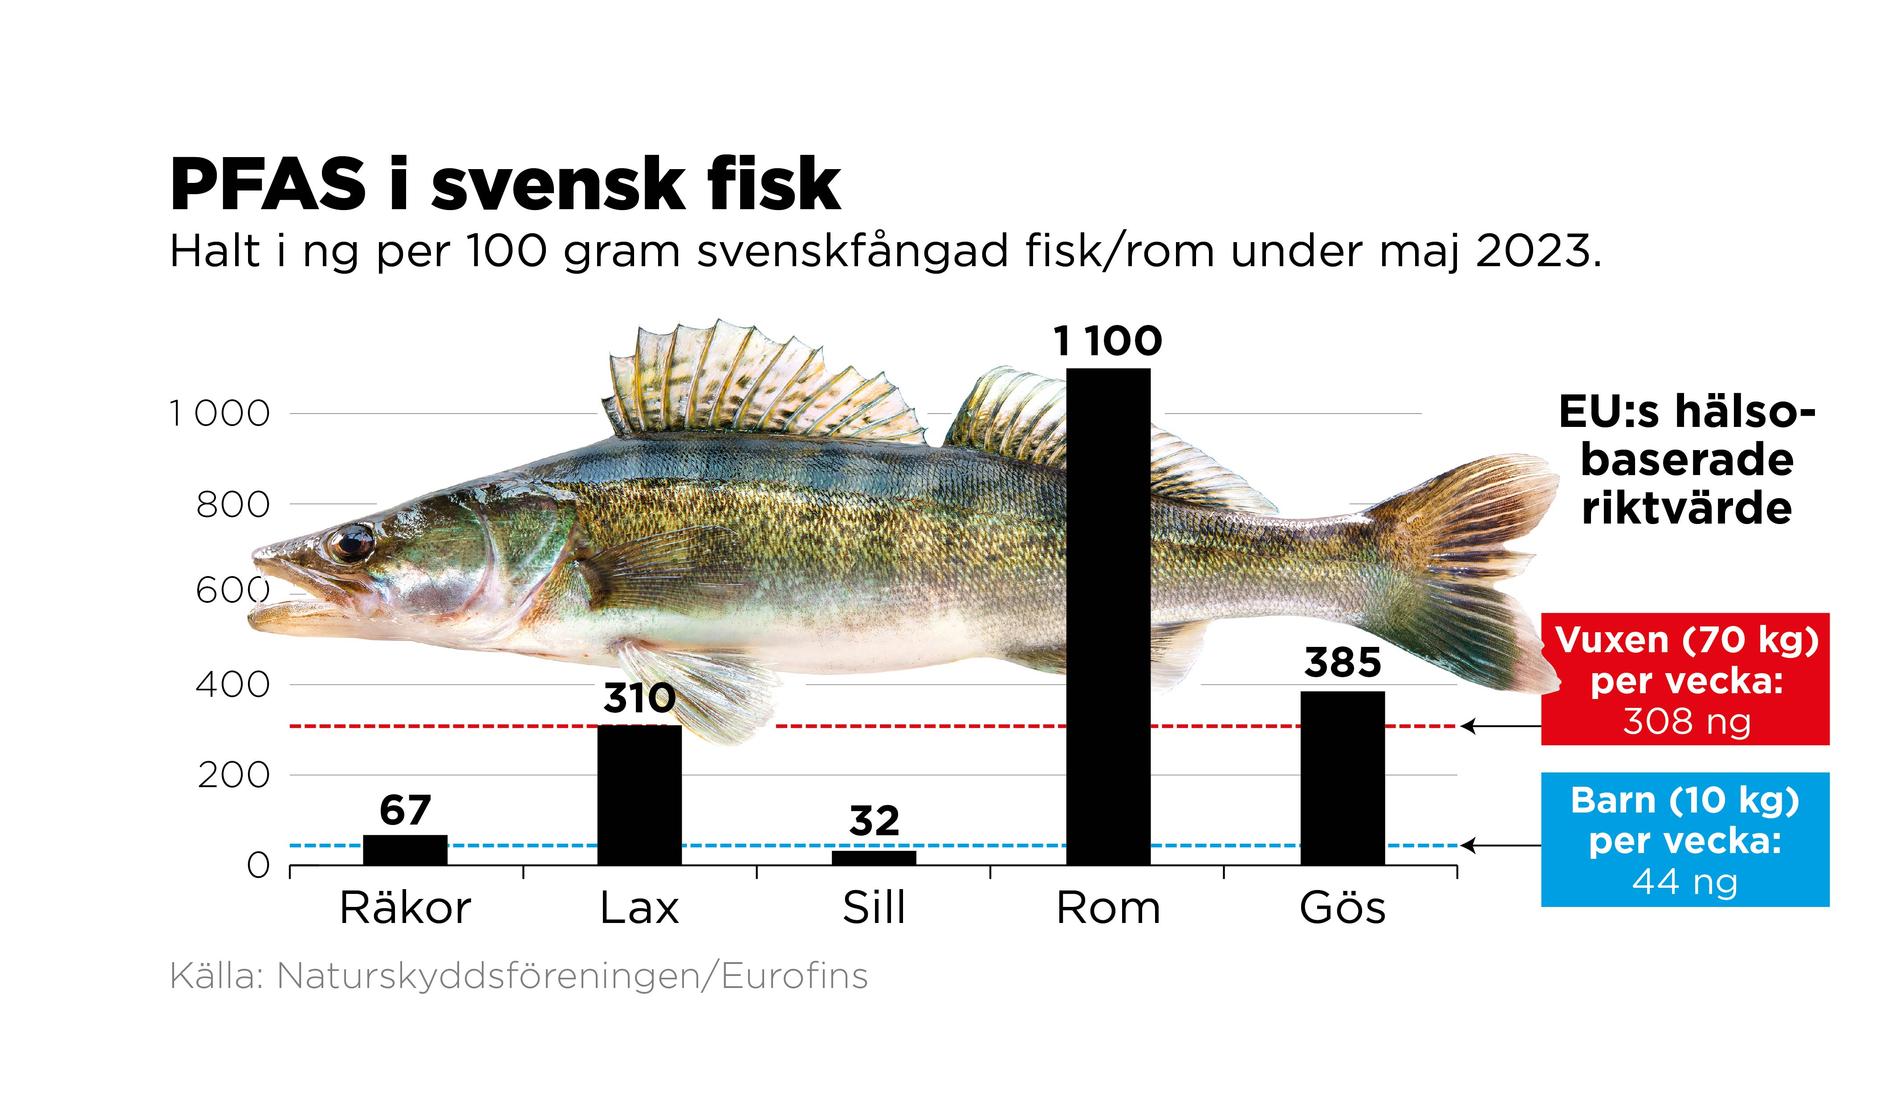 Halt i ng per 100 gram svenskfångad fisk/rom under maj 2023.